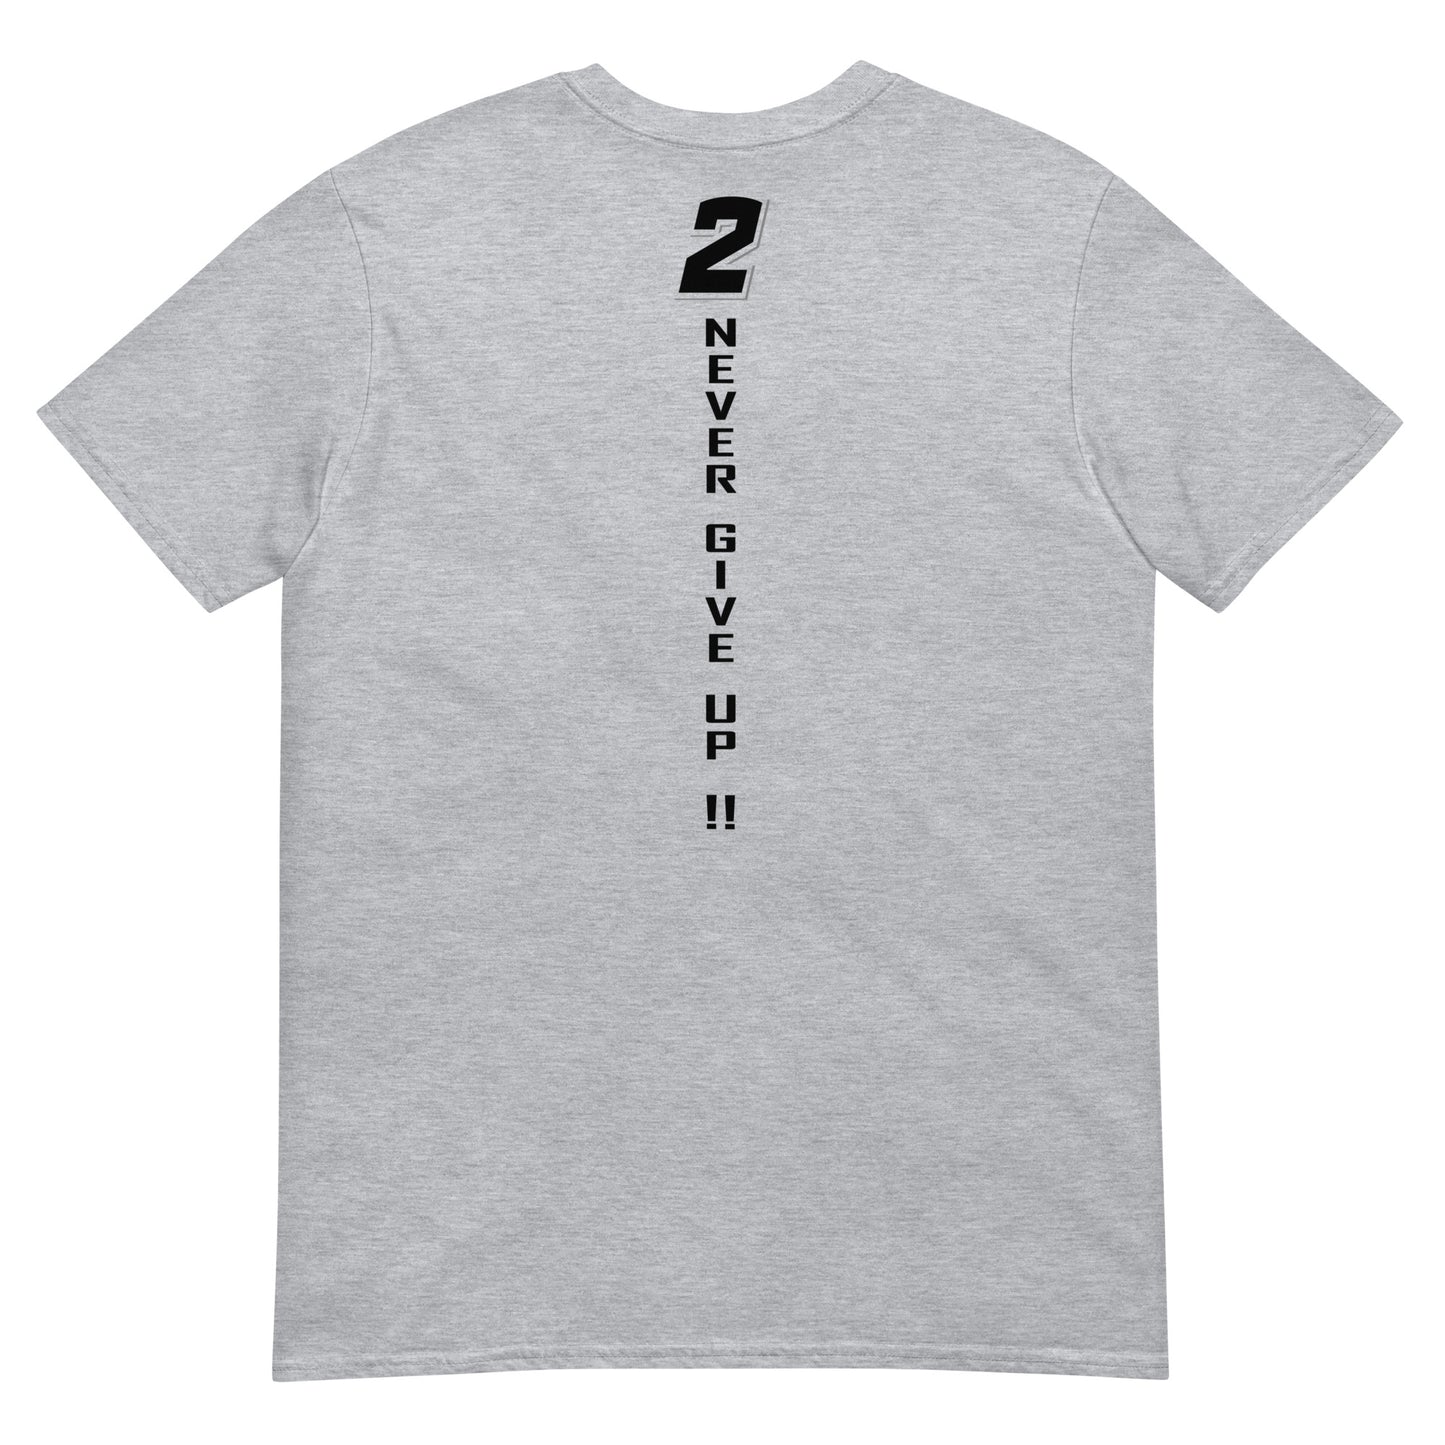 Adult PLACT (Customize) T-Shirt